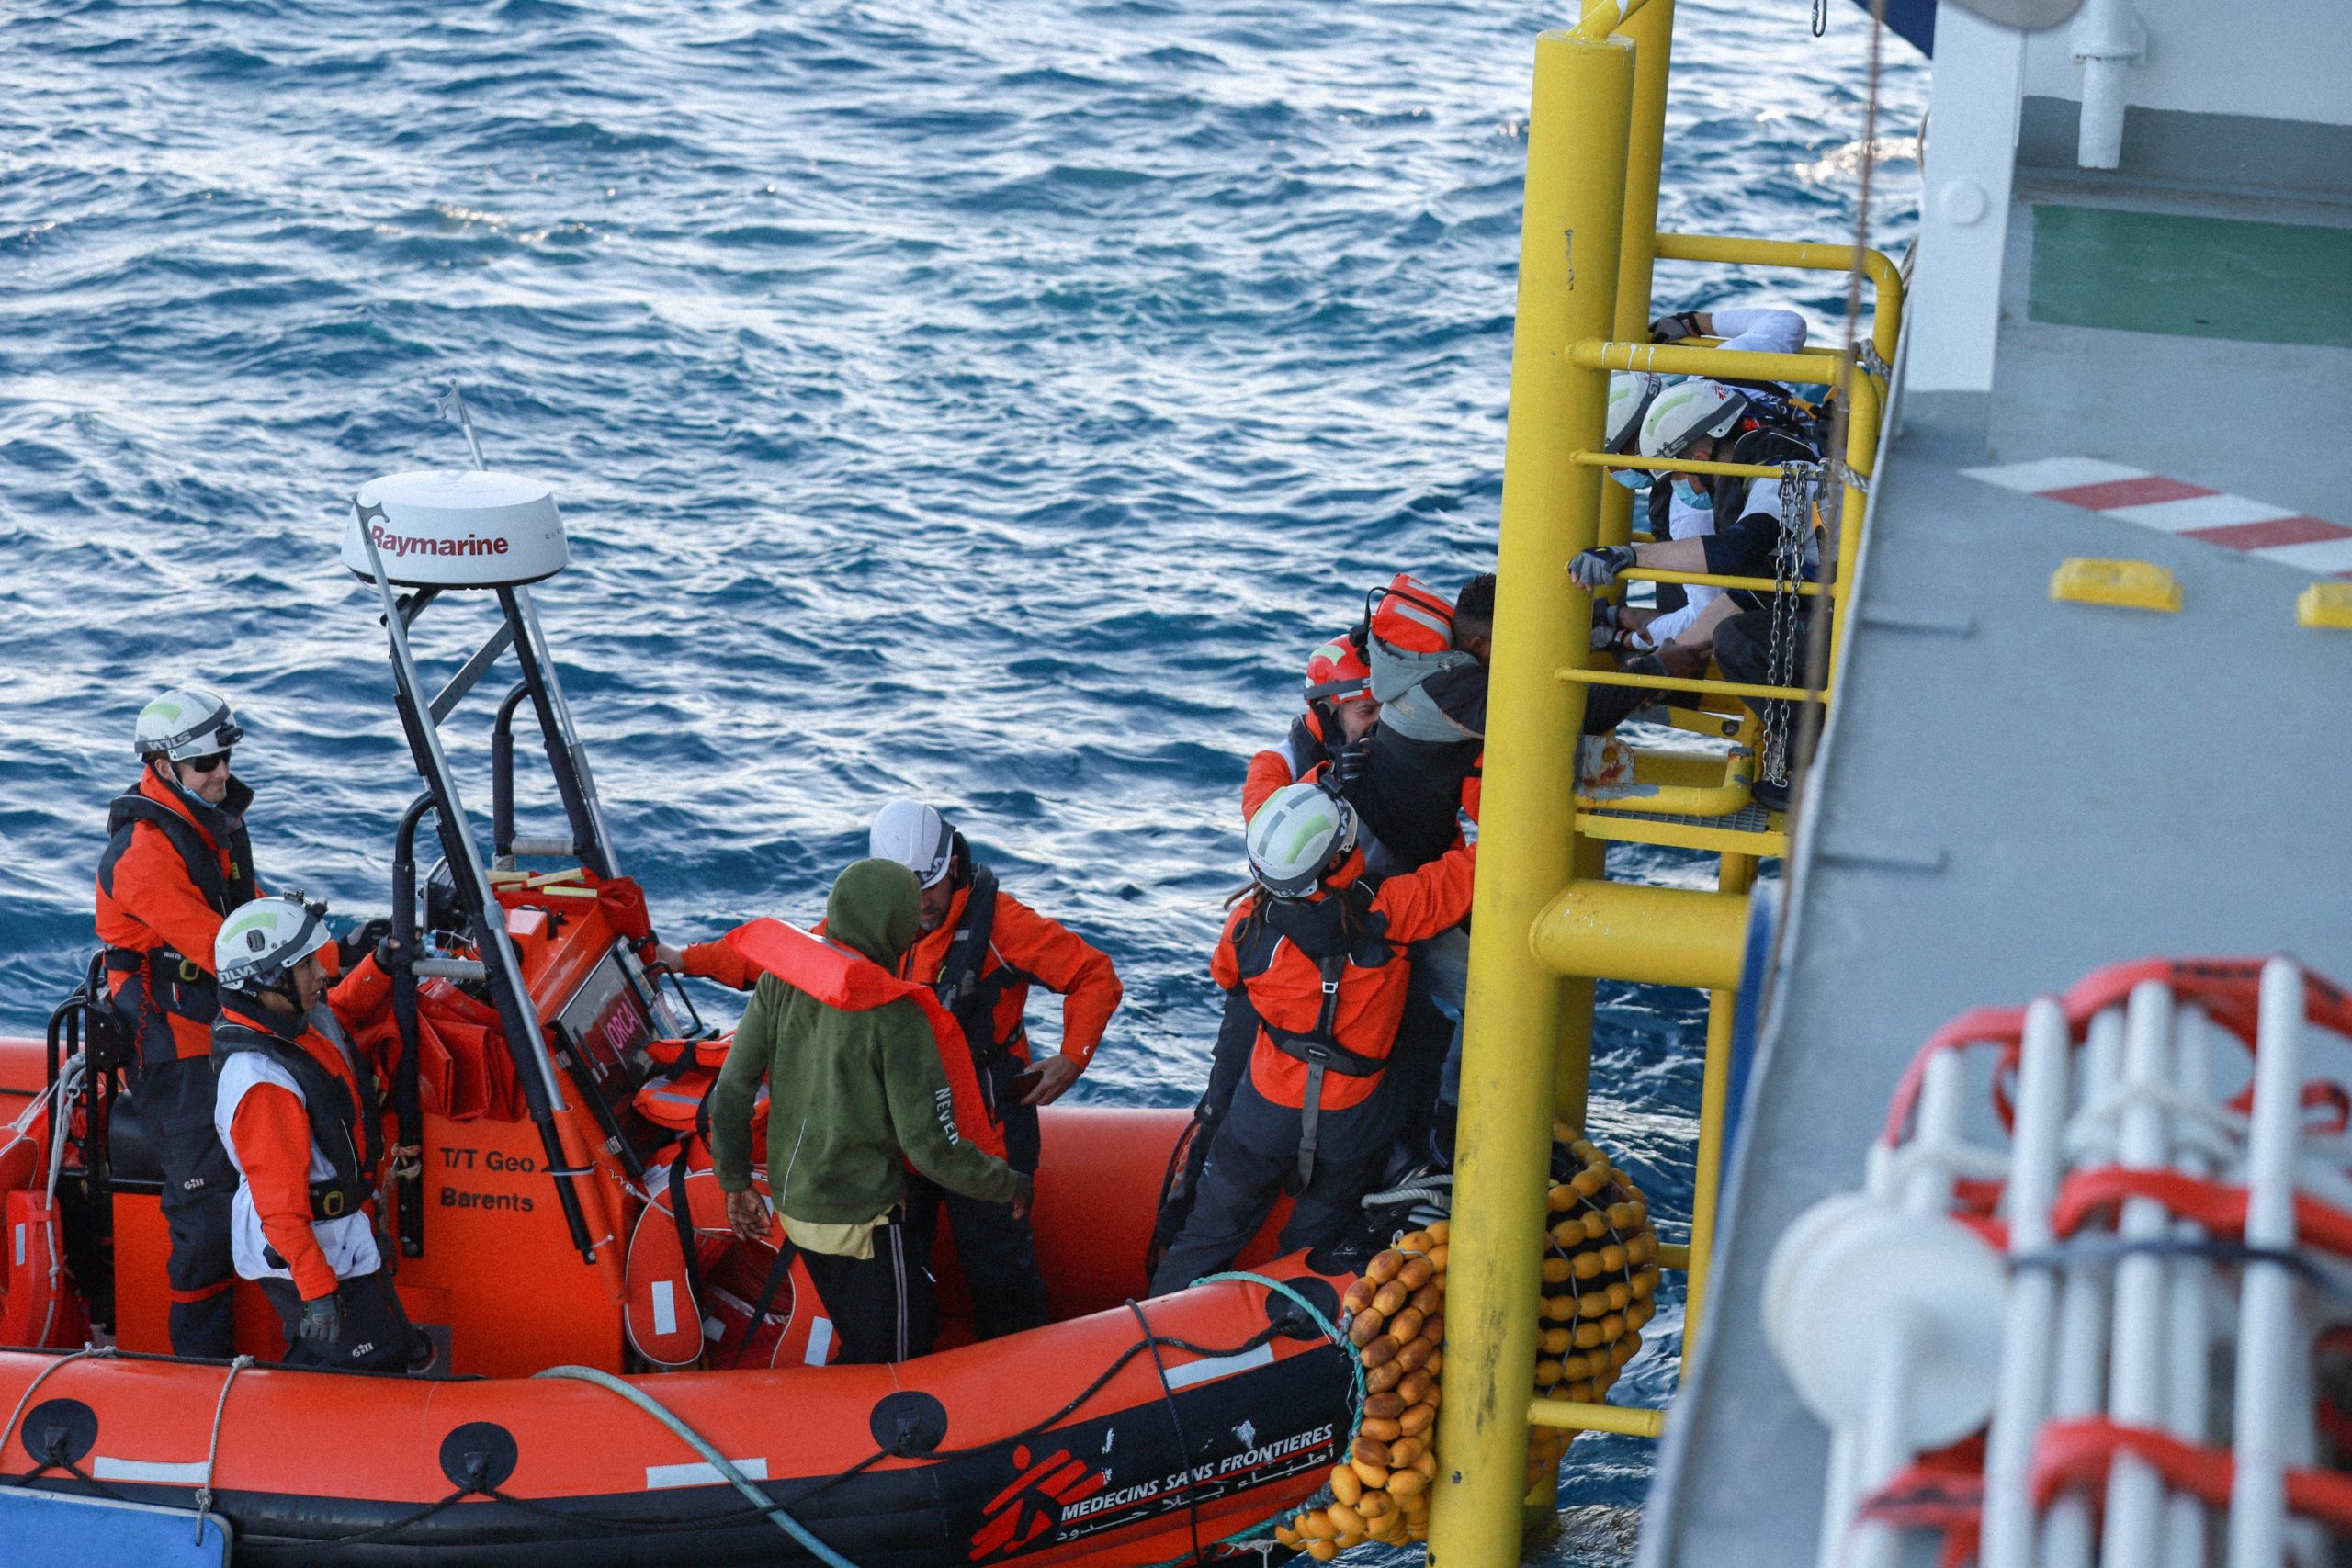 الصورة: انقاذ سفينة "جيو بارنتس" لـ 69 مهاجرا من وسط المتوسط رغم تهديدات خفر السواحل الليبي، 24 يناير 2023. أطباء بلا حدود ©